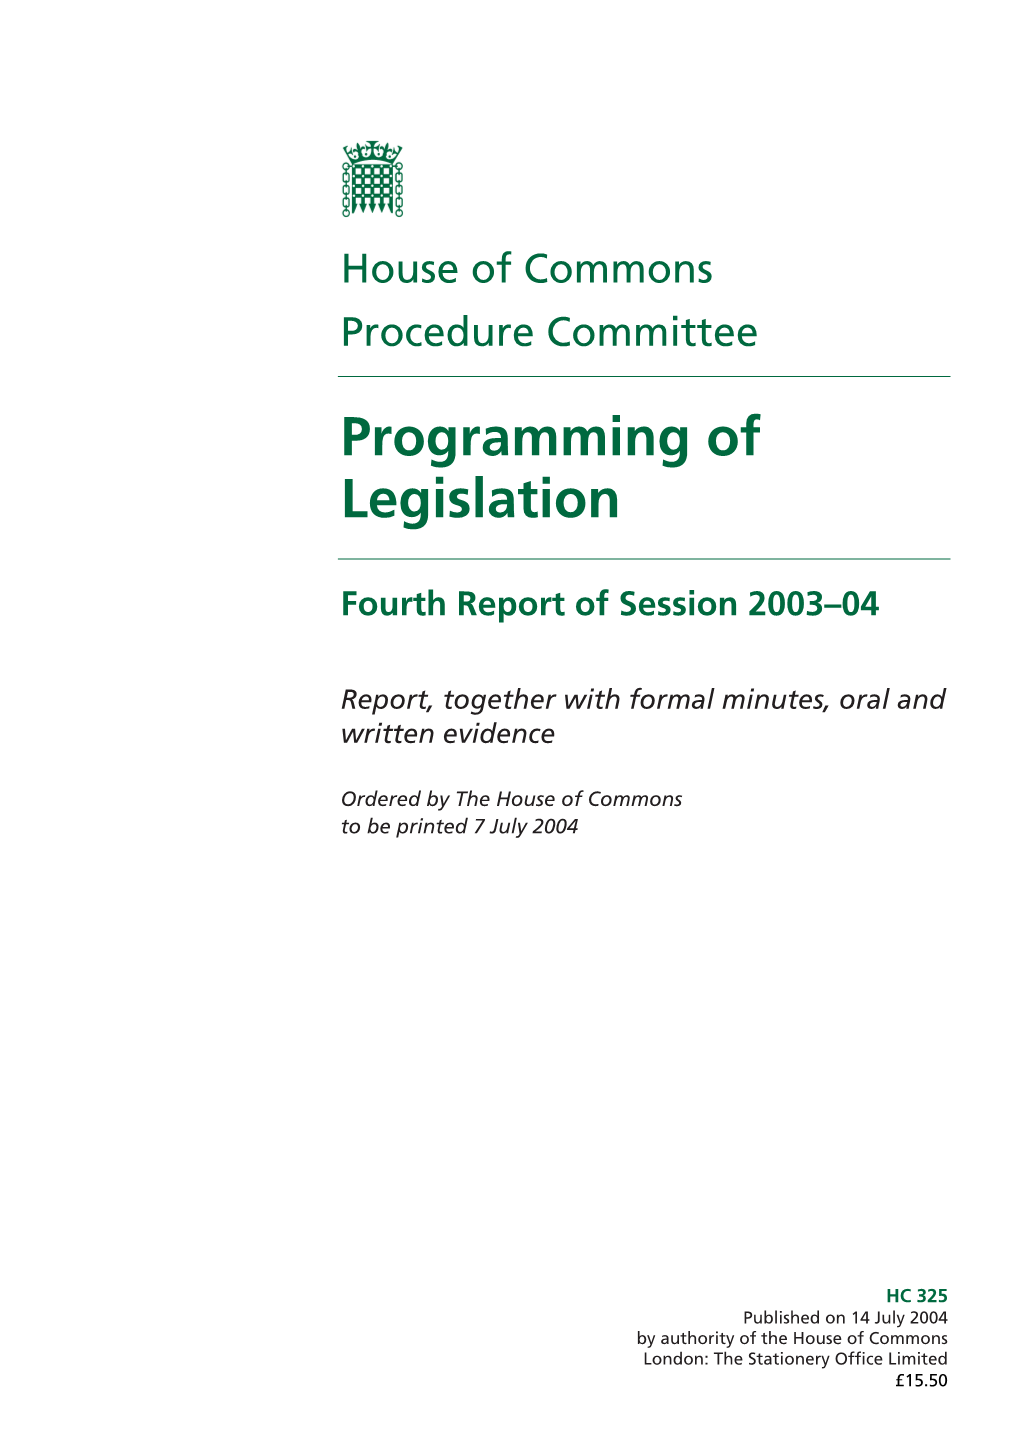 Programming of Legislation